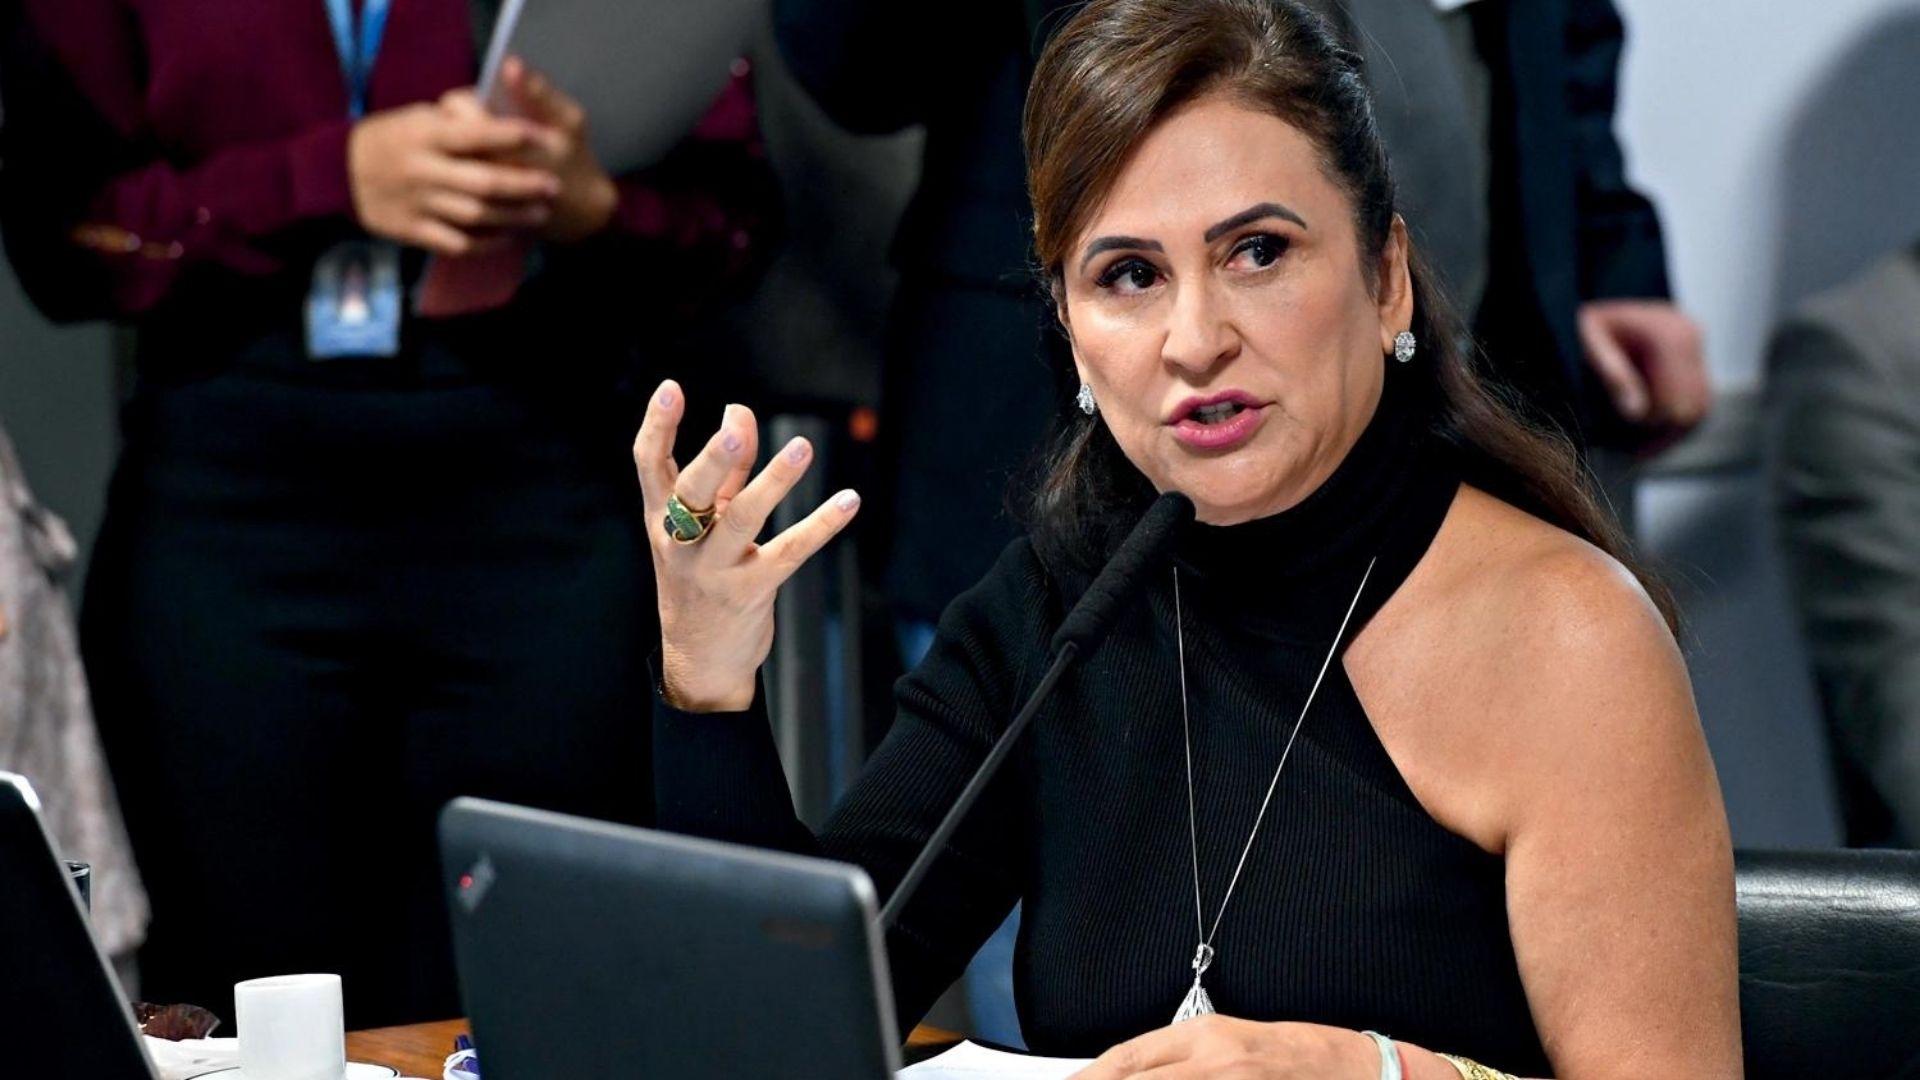 Foto da senadora Kátia Abreu com vestido preto e gesticulado com a mão direita.